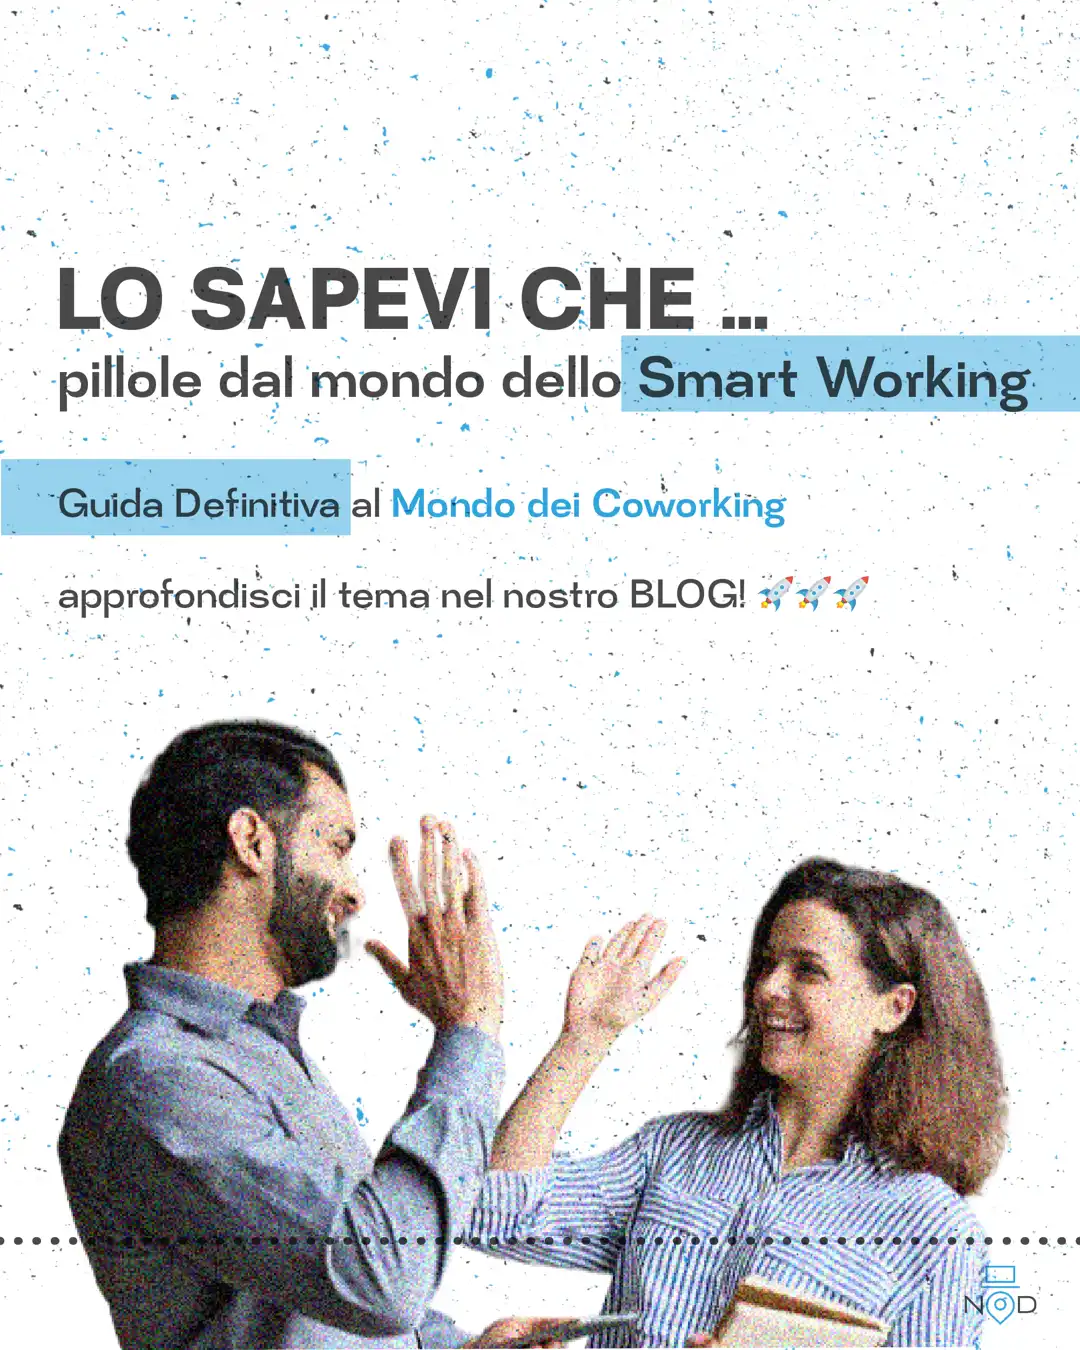 Mondo coworking Italia